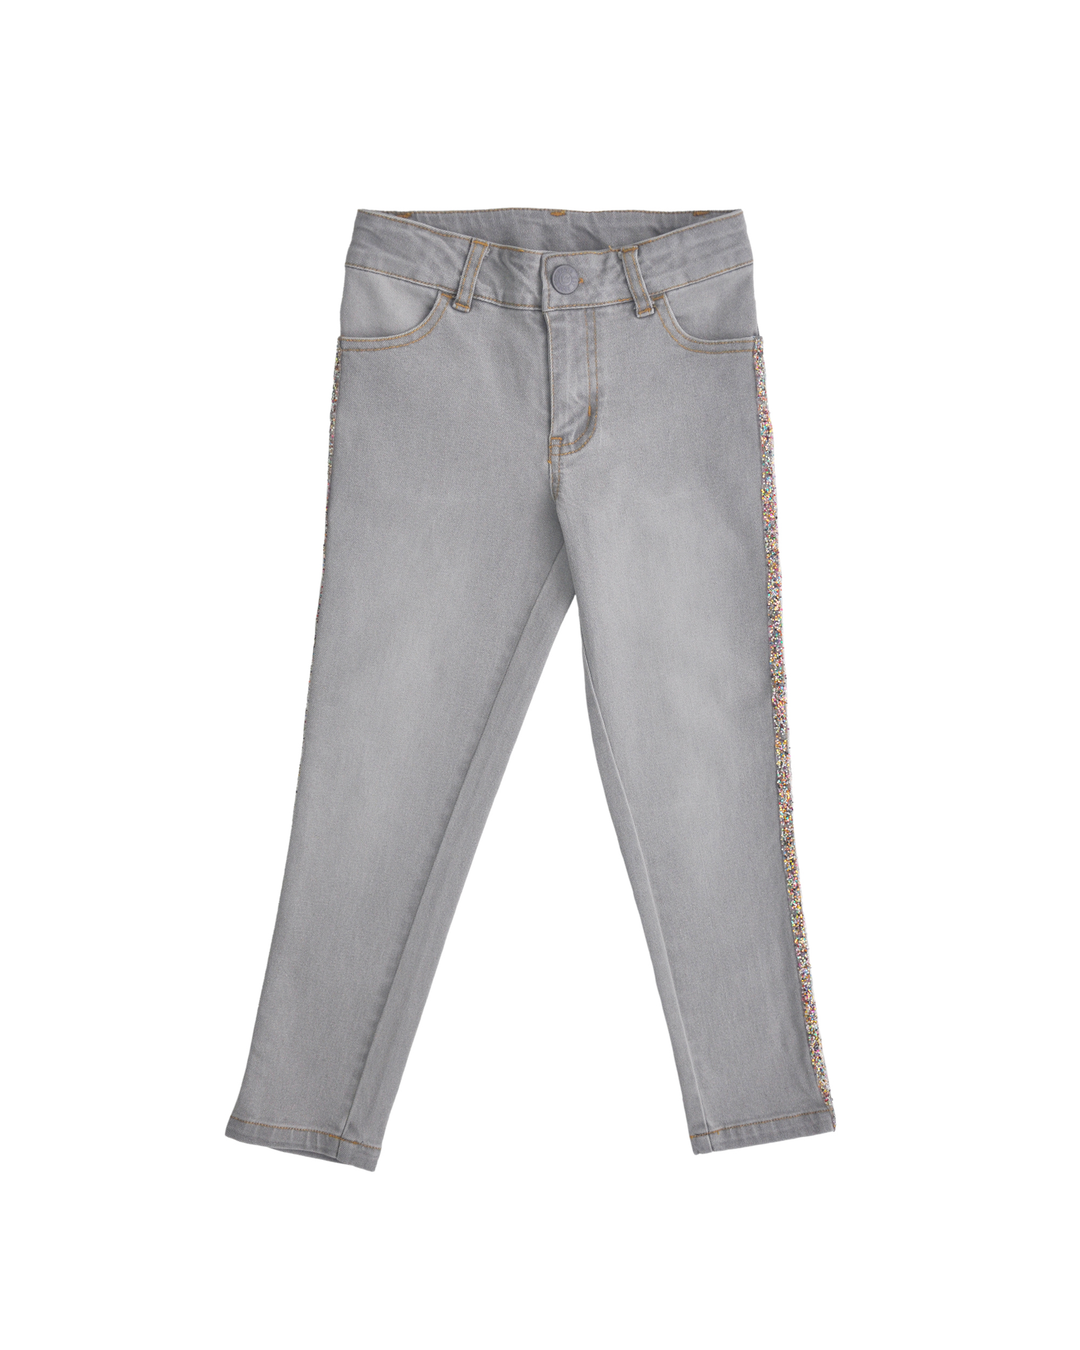 Pantalón gris con cinta multicolor en el costado